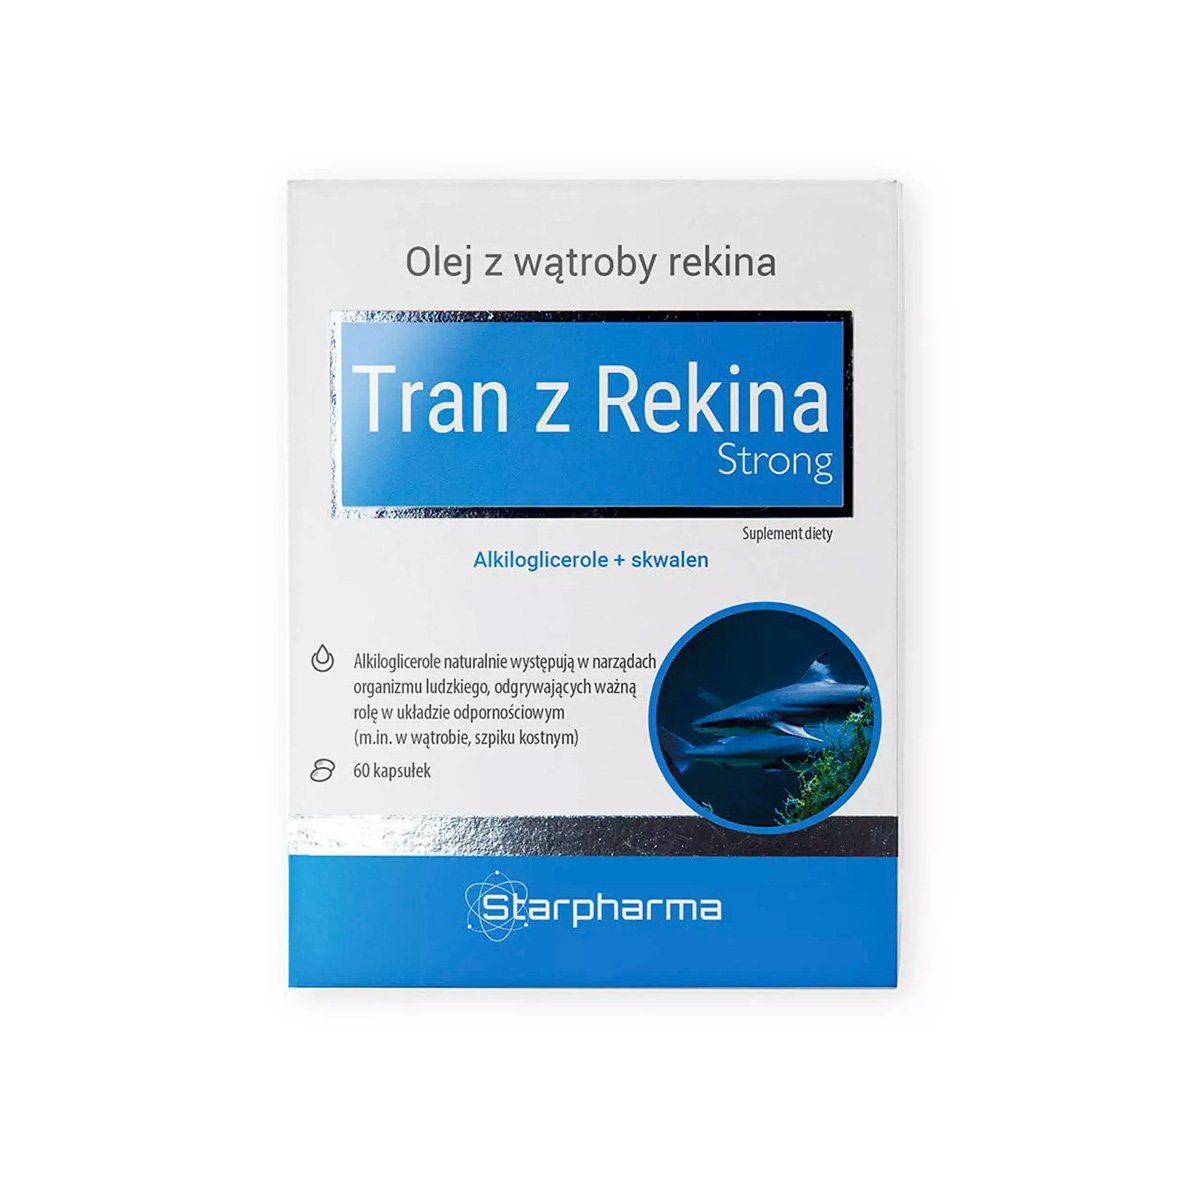 Фото - Вітаміни й мінерали Starpharma Tran Z Rekina Strong Suplement diety, 60 kaps. 